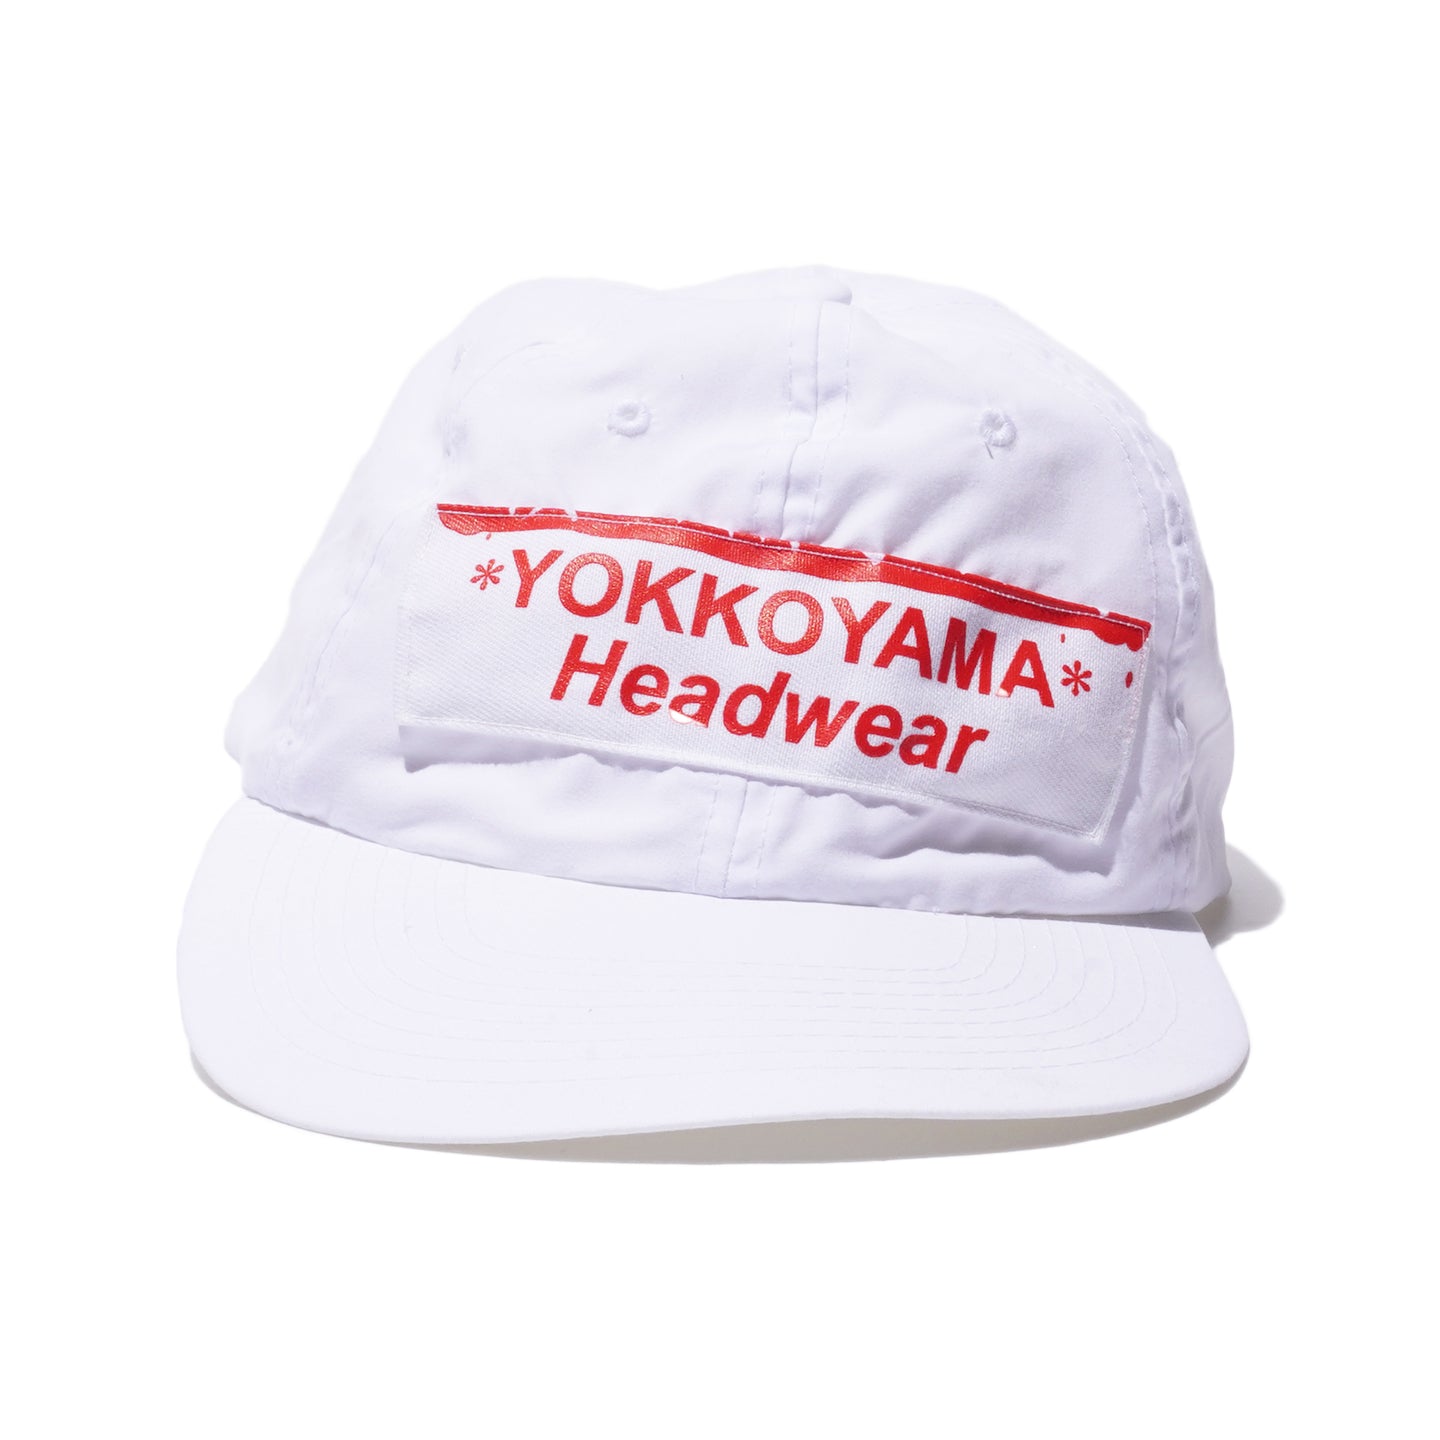 YOKKOYAMA HEADWEAR CAP